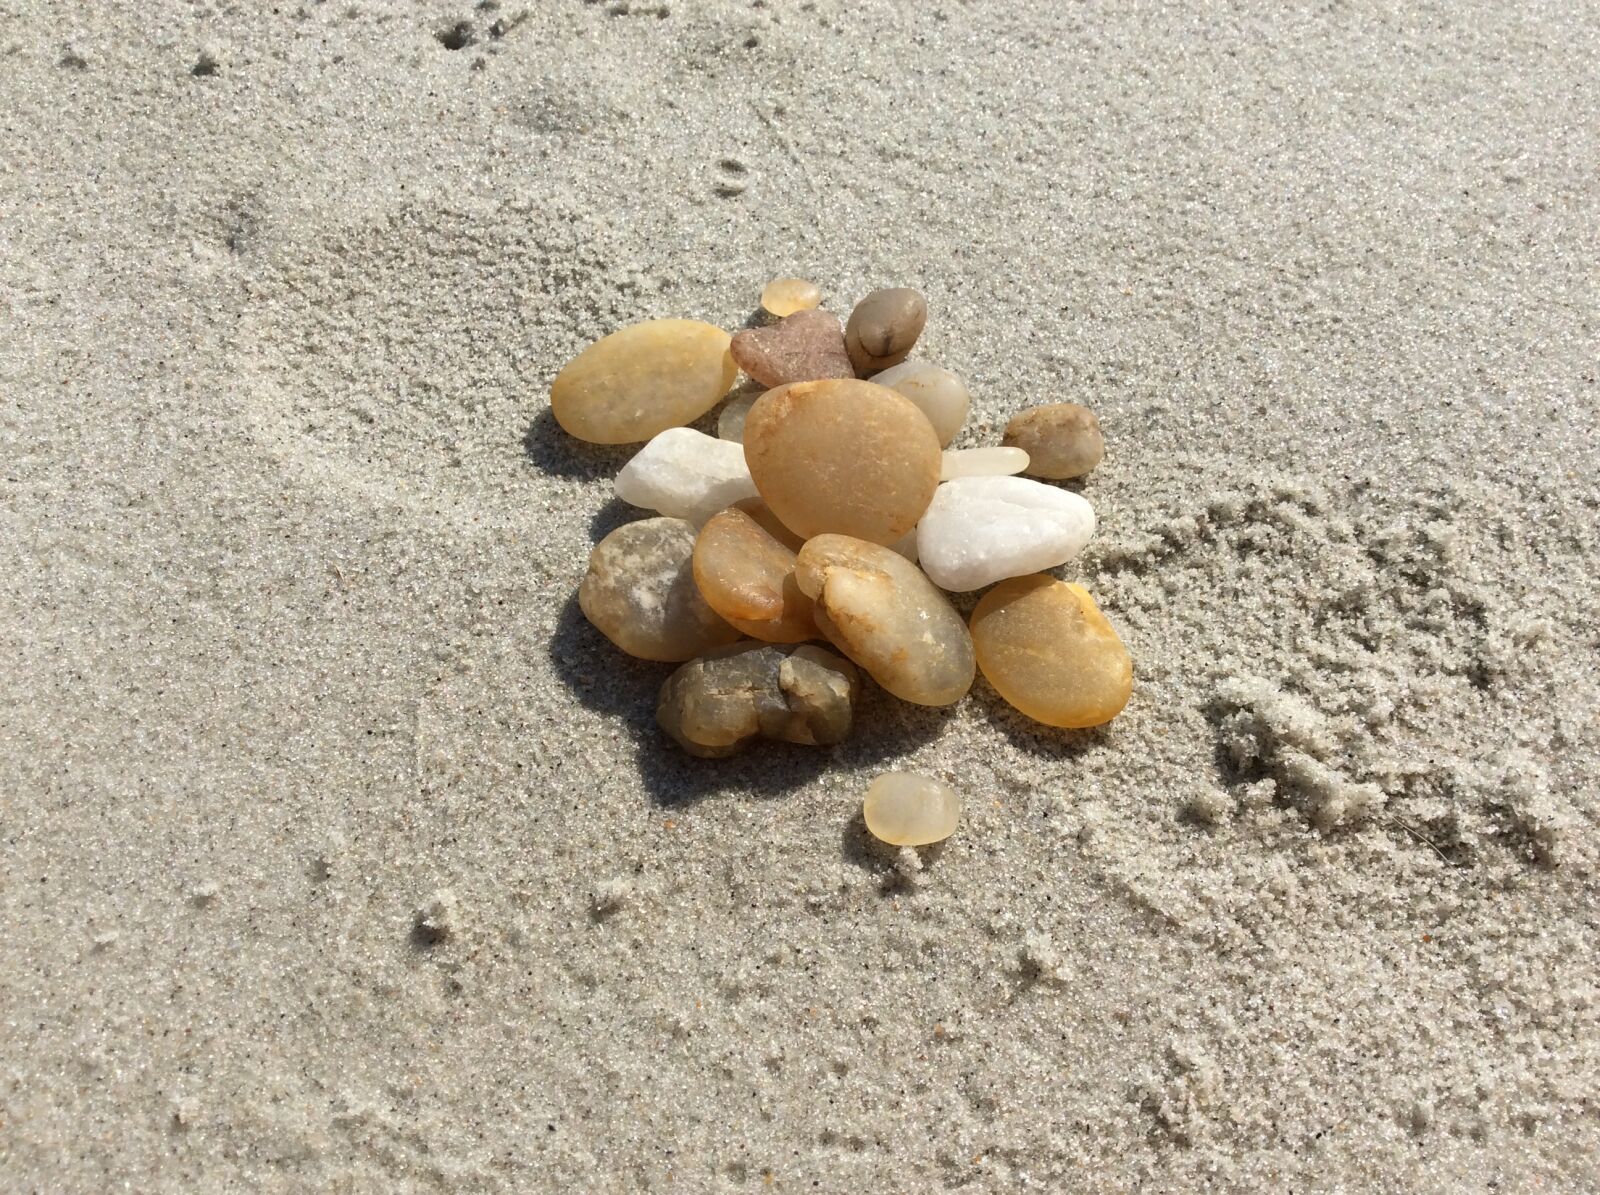 Apple iPad Air sample photo. Rocks, pile, beach photography